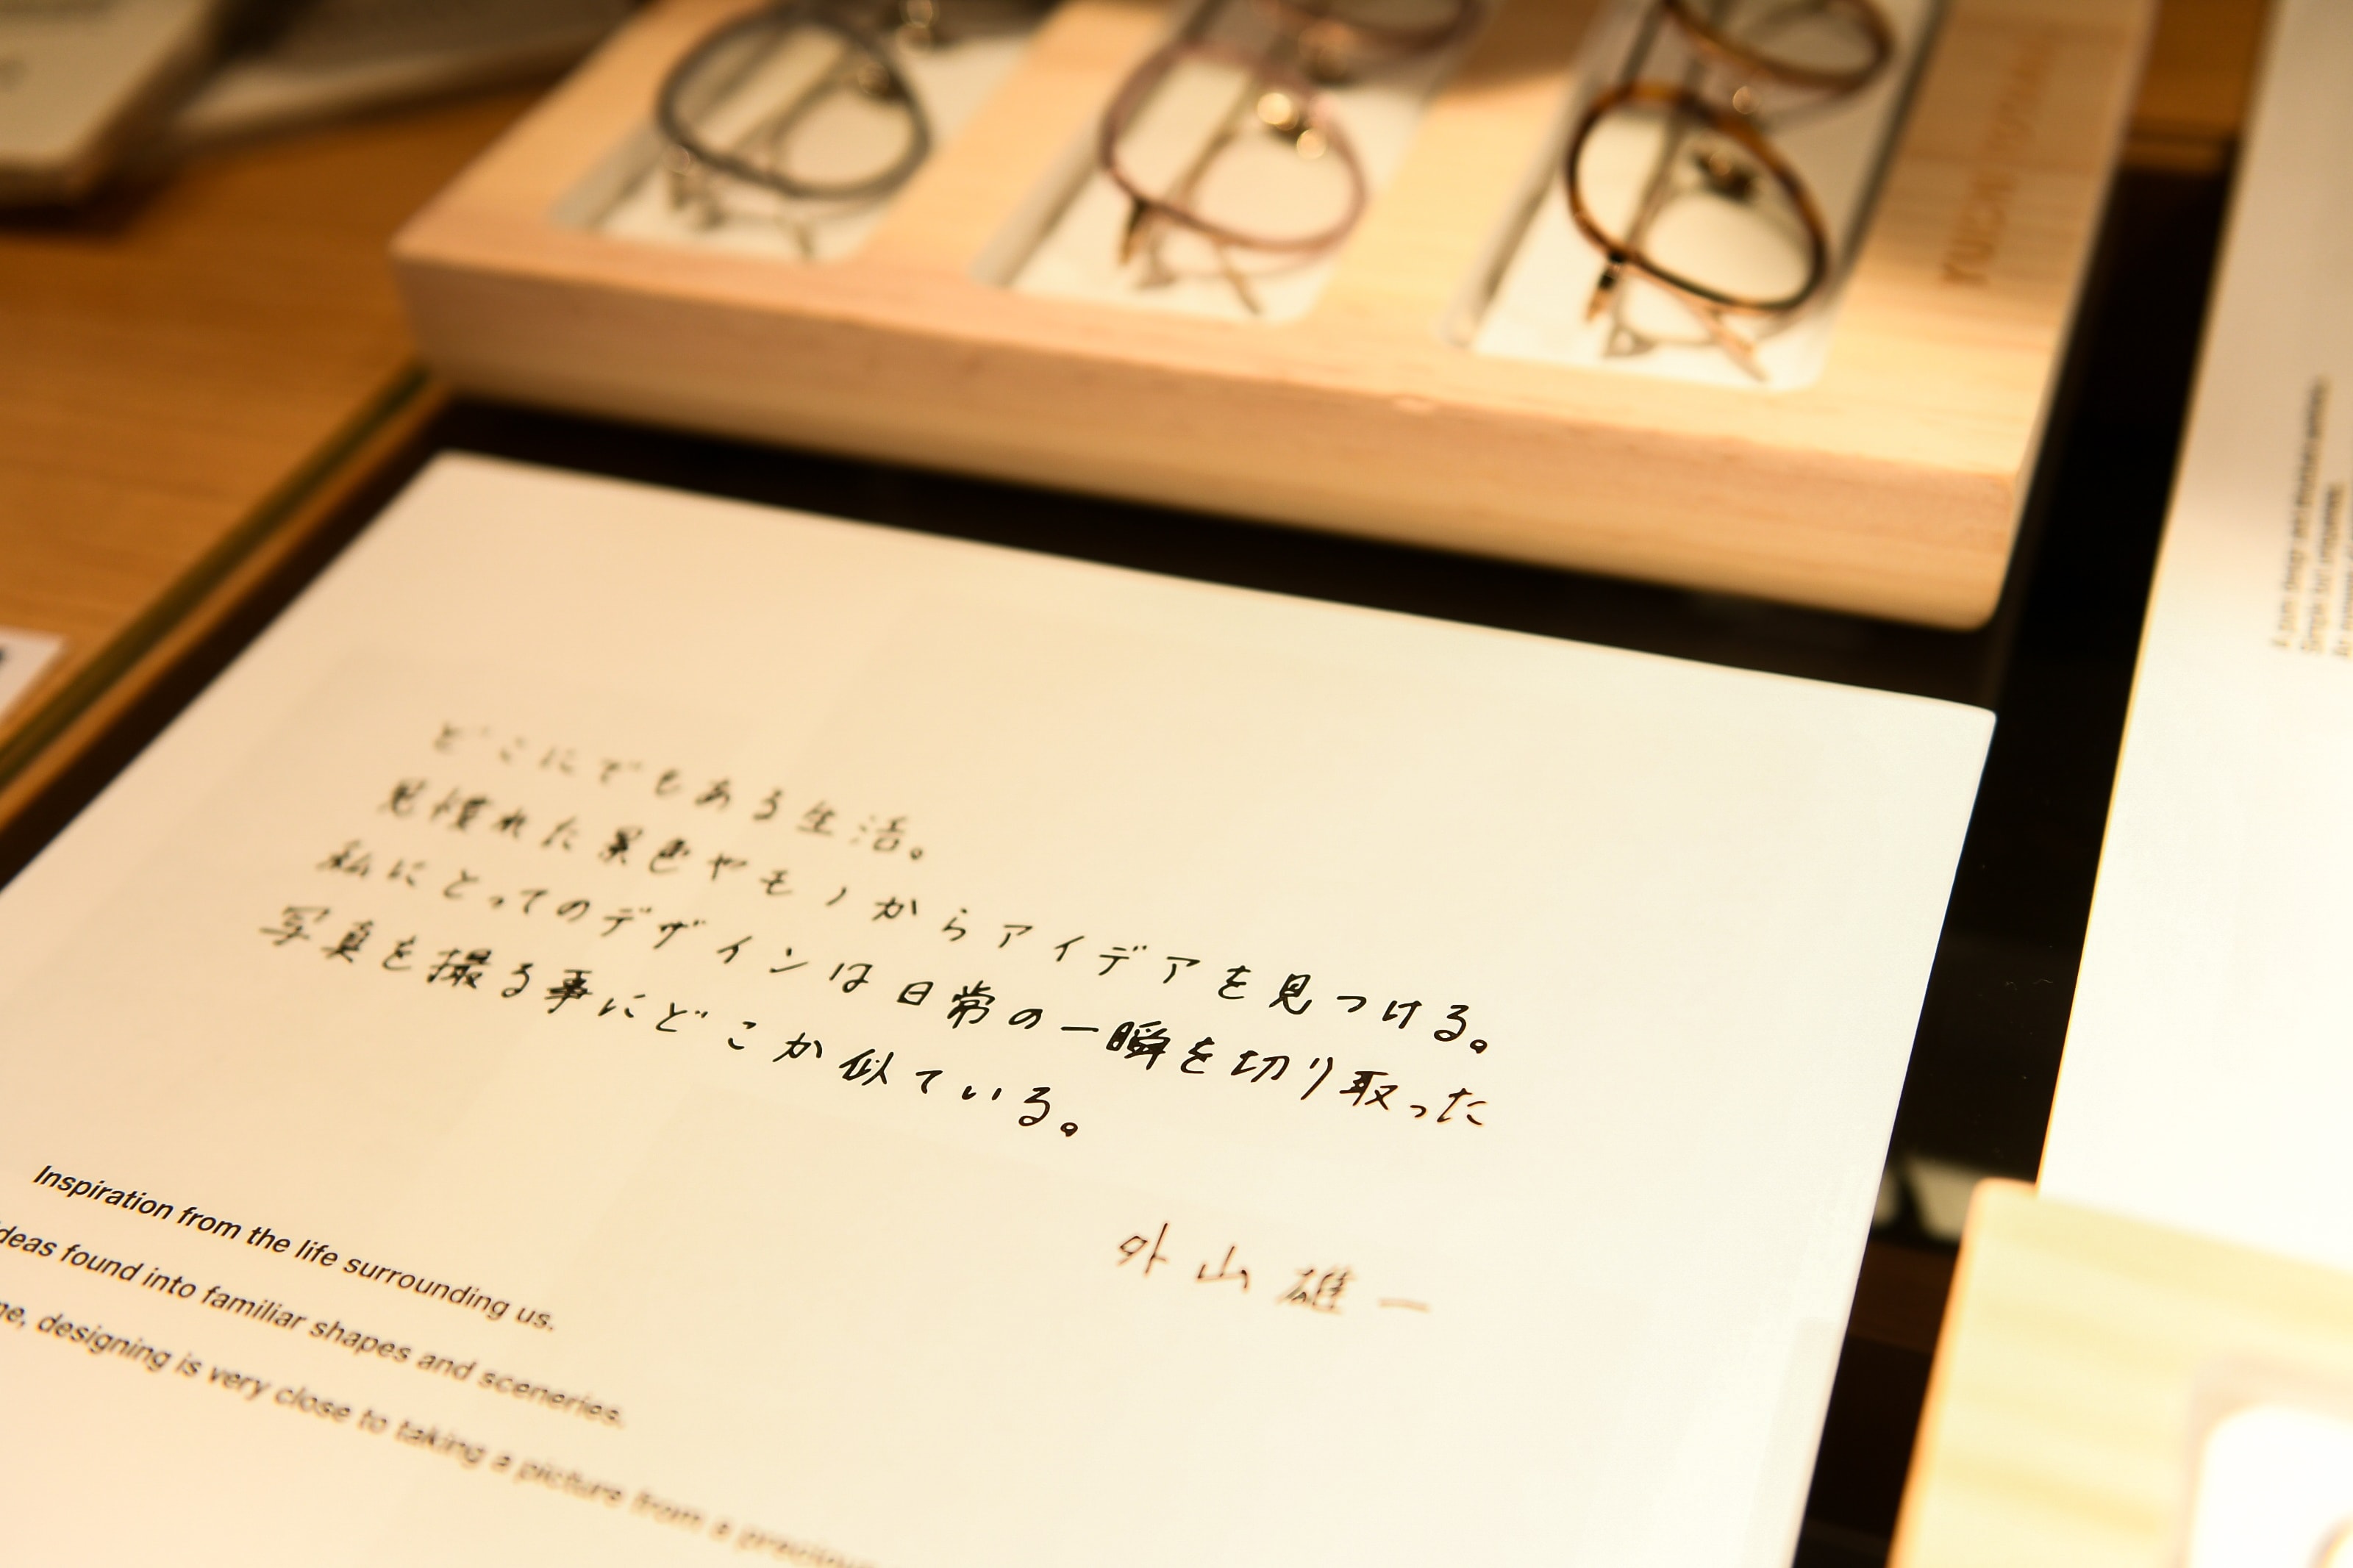 上野眼镜店首发日本眼镜品牌 YUICHI TOYAMA 2020 全新系列